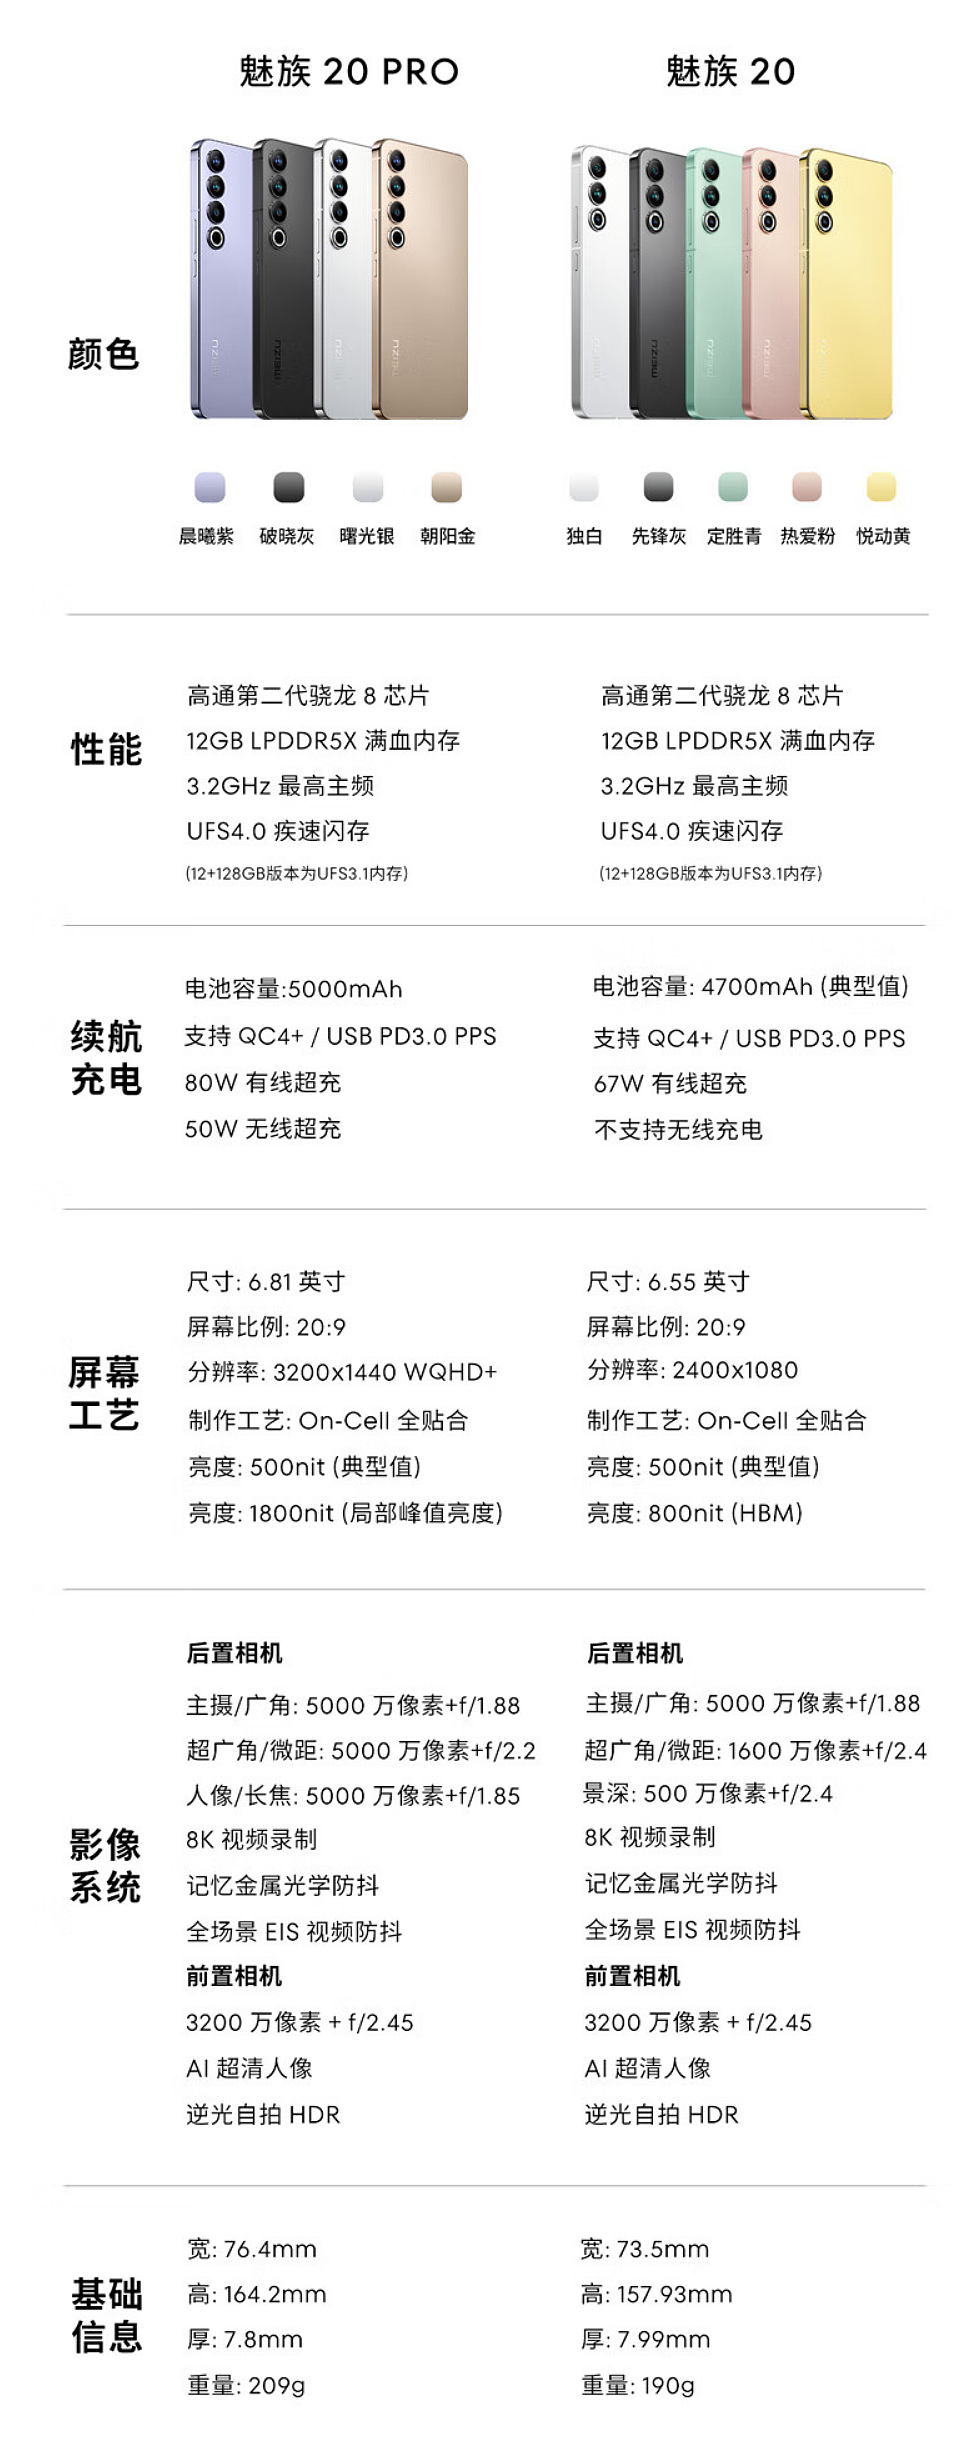 立减 1200 元 + 6 期免息：魅族 20 Pro 手机 2799 元京东百亿补贴 - 1